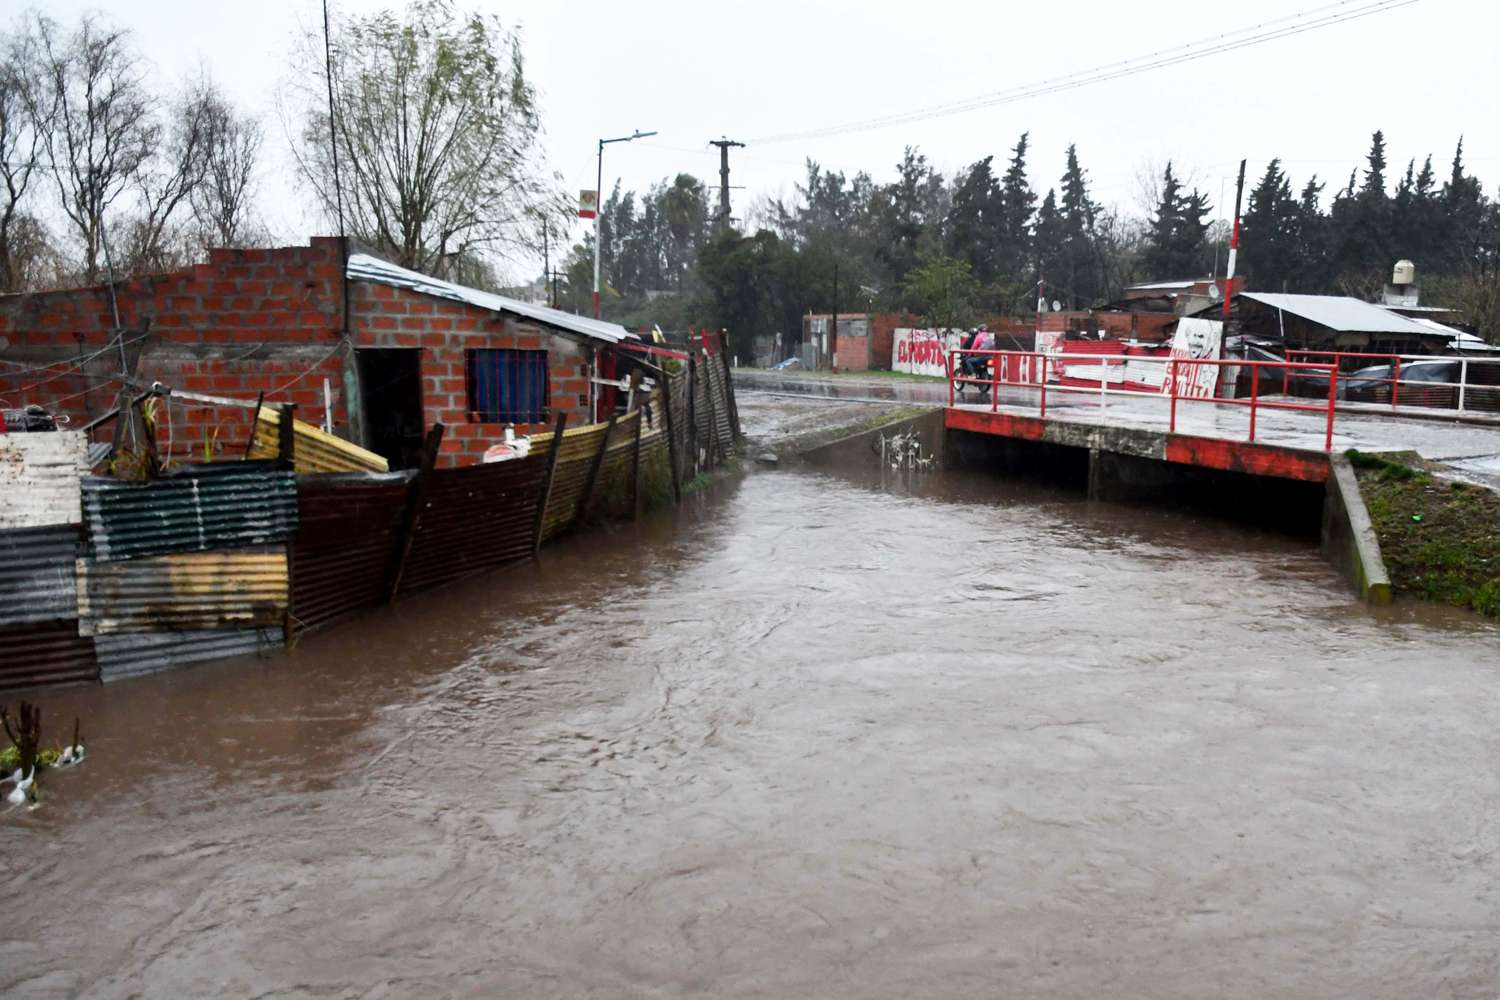 Inundación en La Plata: “Estamos asistiendo a las familias por medio del Estado”, aseguró Tolosa Paz